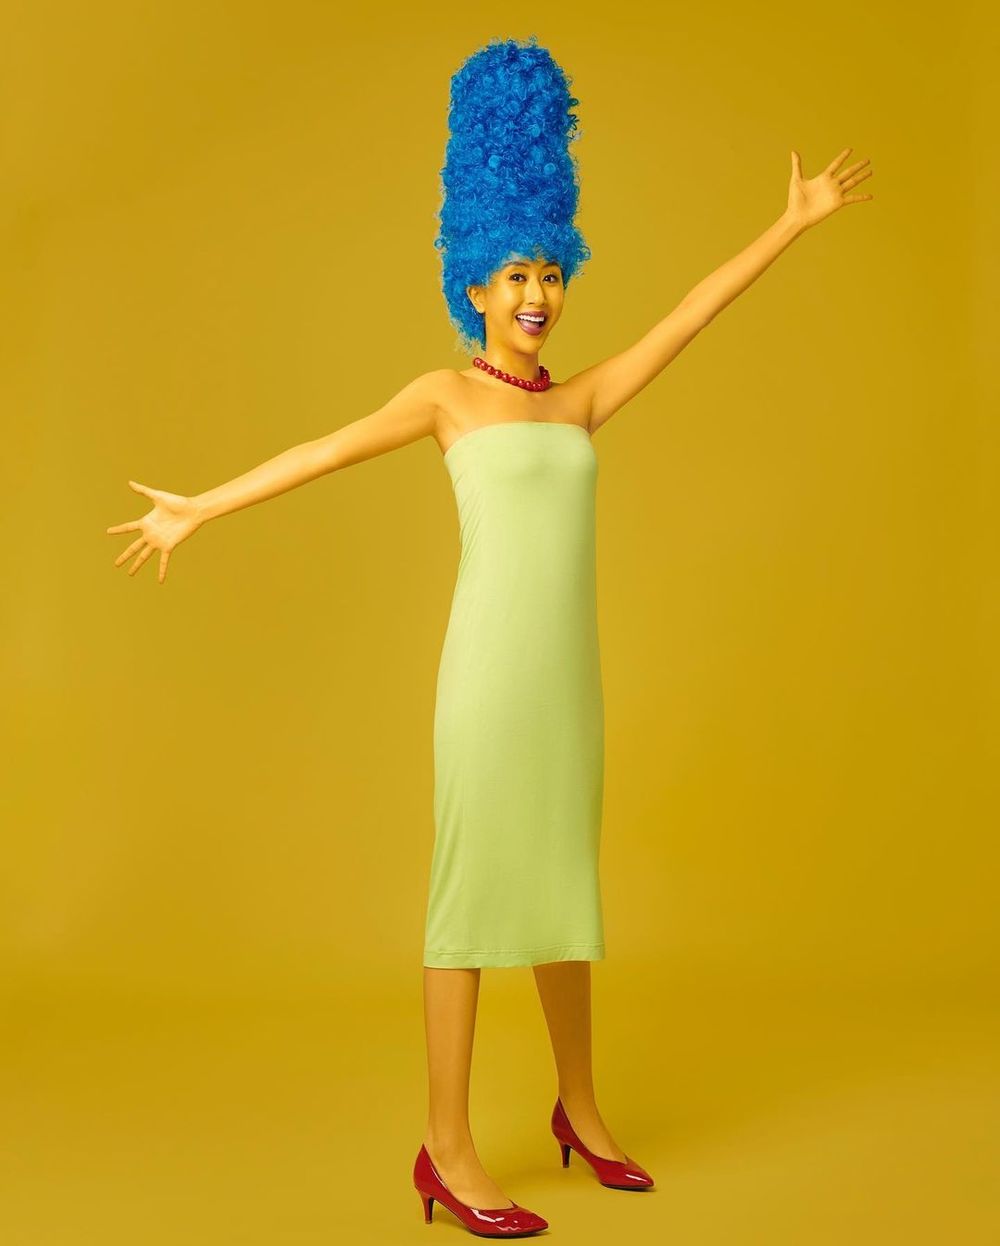  
Quỳnh Anh Shyn cosplay thành nhân vật hoạt hình - "Gia đình Simpson", nổi bật với mái tóc xanh dương và chiếc váy quây màu xanh nhạt. (Ảnh: FBNV)